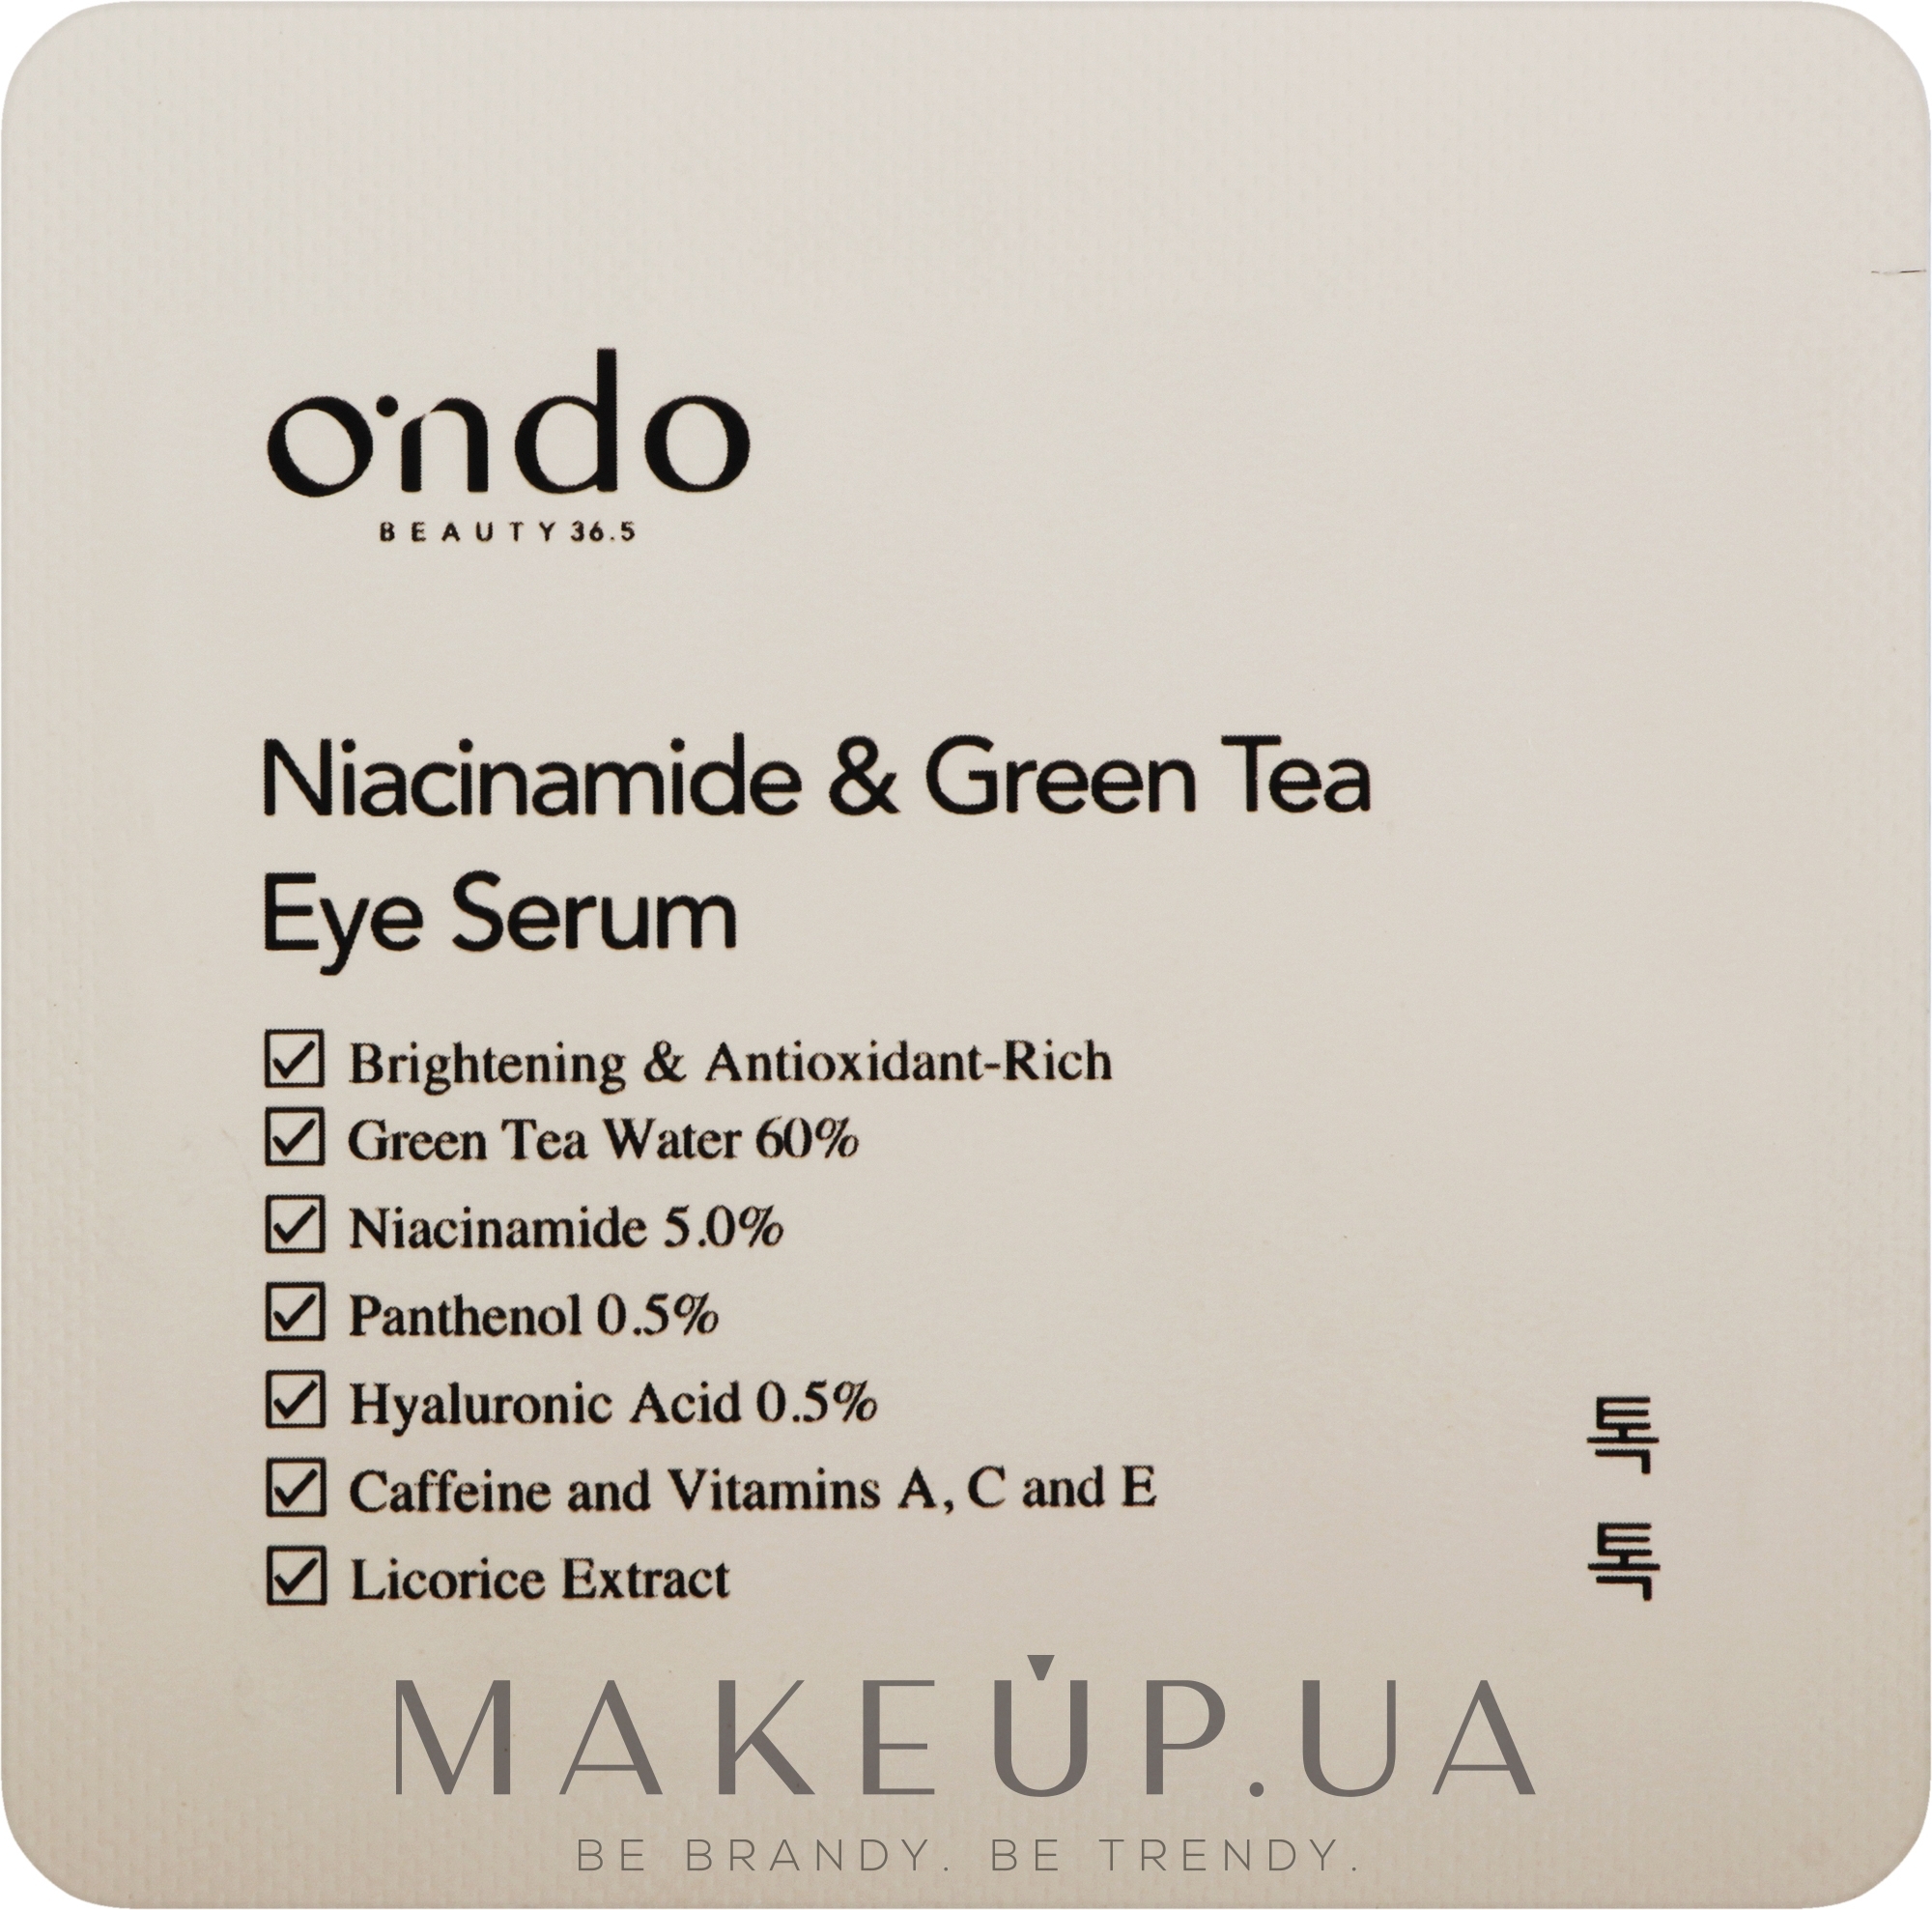 Сыворотка для глаз с ниацинамидом и зеленым чаем - Ondo Beauty 36.5 Niacinamide & Green Tea Eye Serum (пробник) — фото 1.5ml